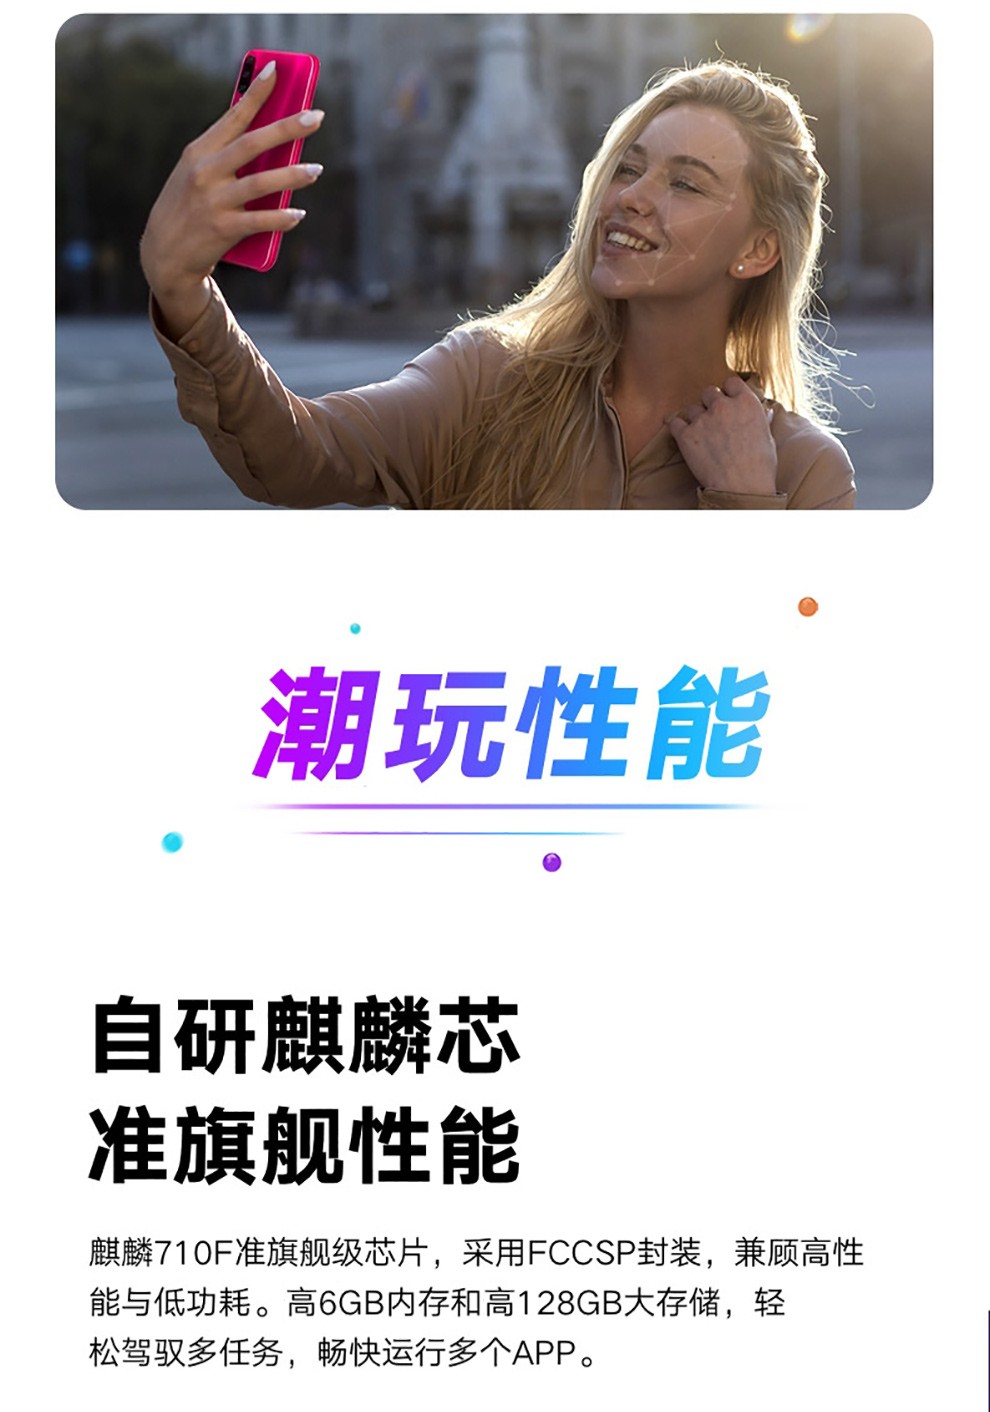 中山手机网 华为(huawei) 华为 荣耀play3手机专卖